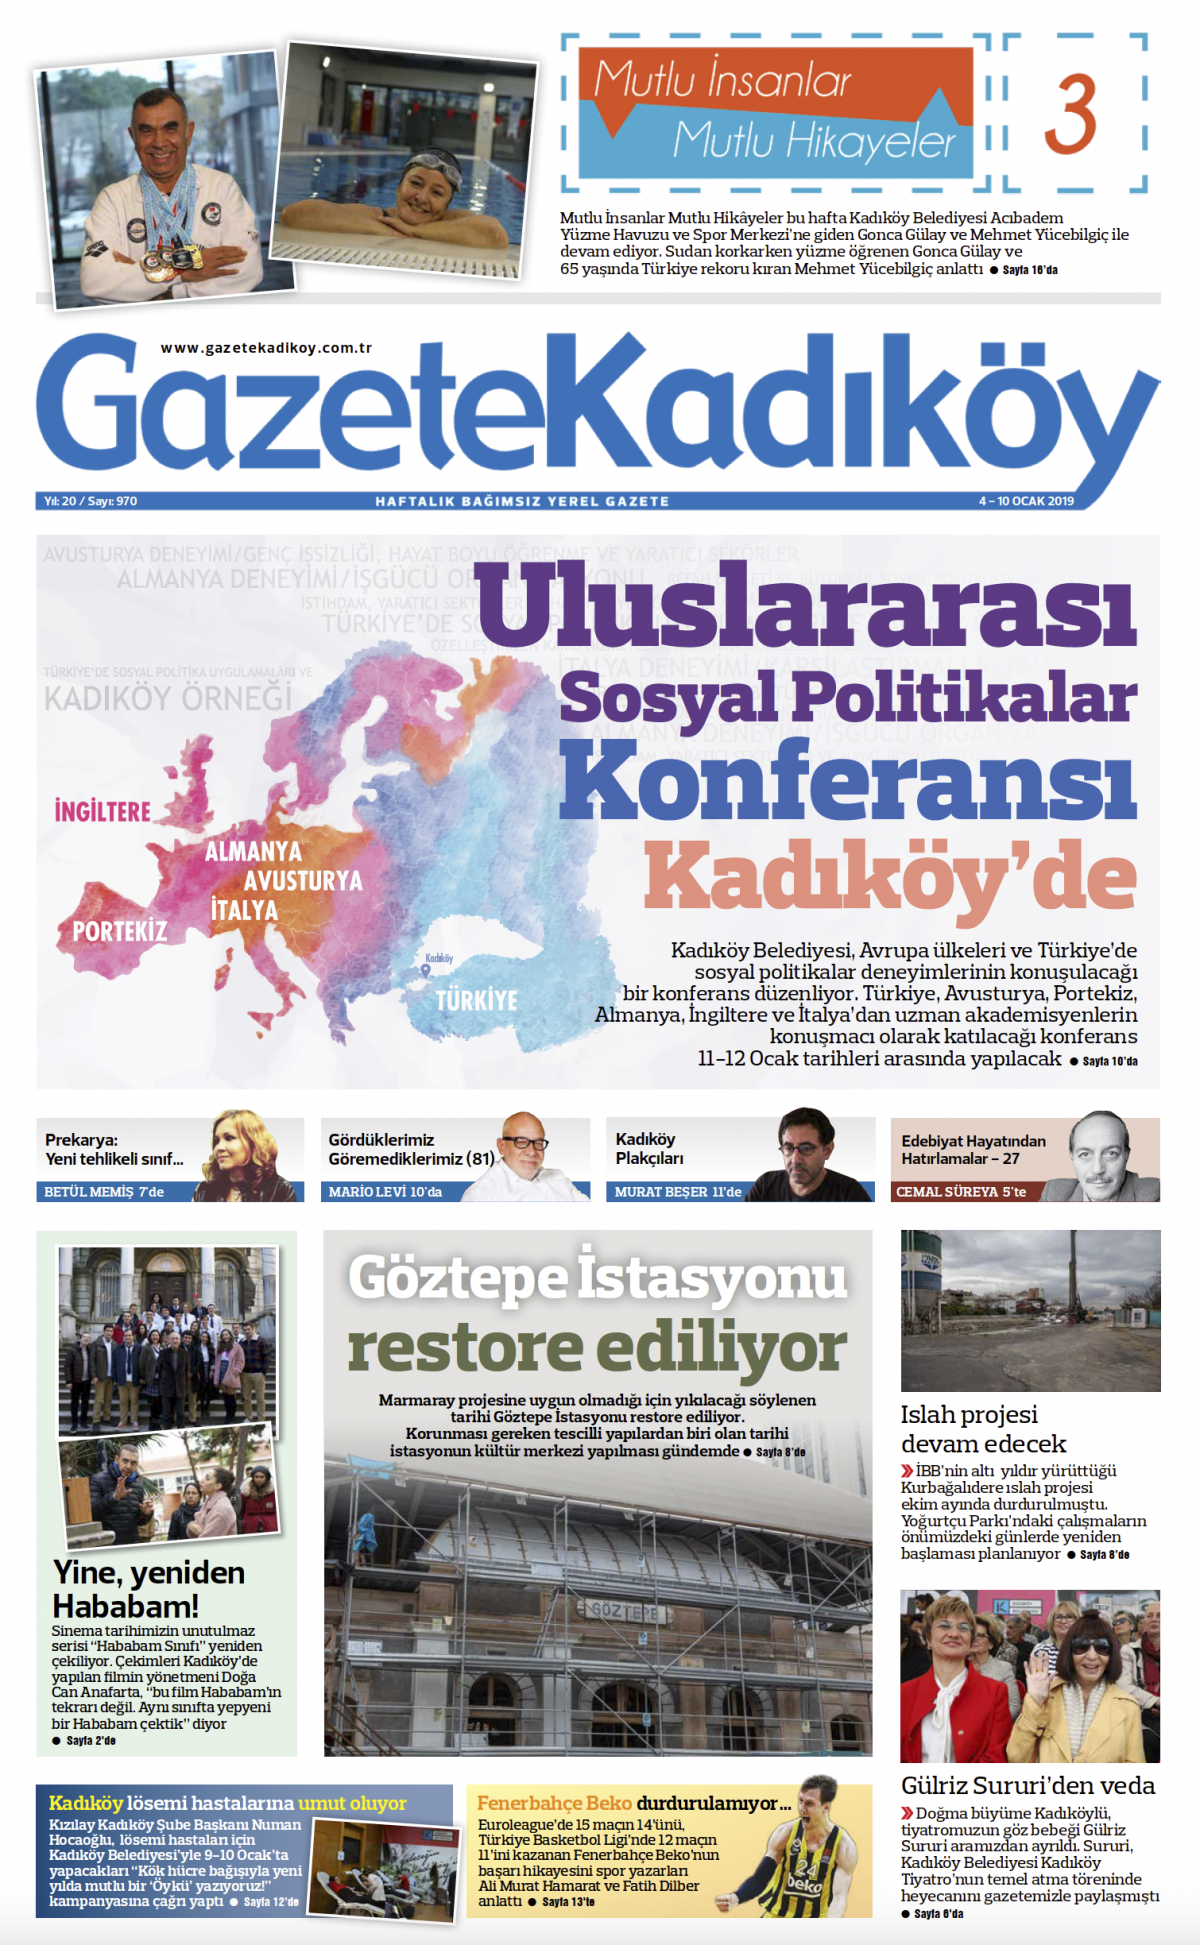 Gazete Kadıköy - 970. SAYI